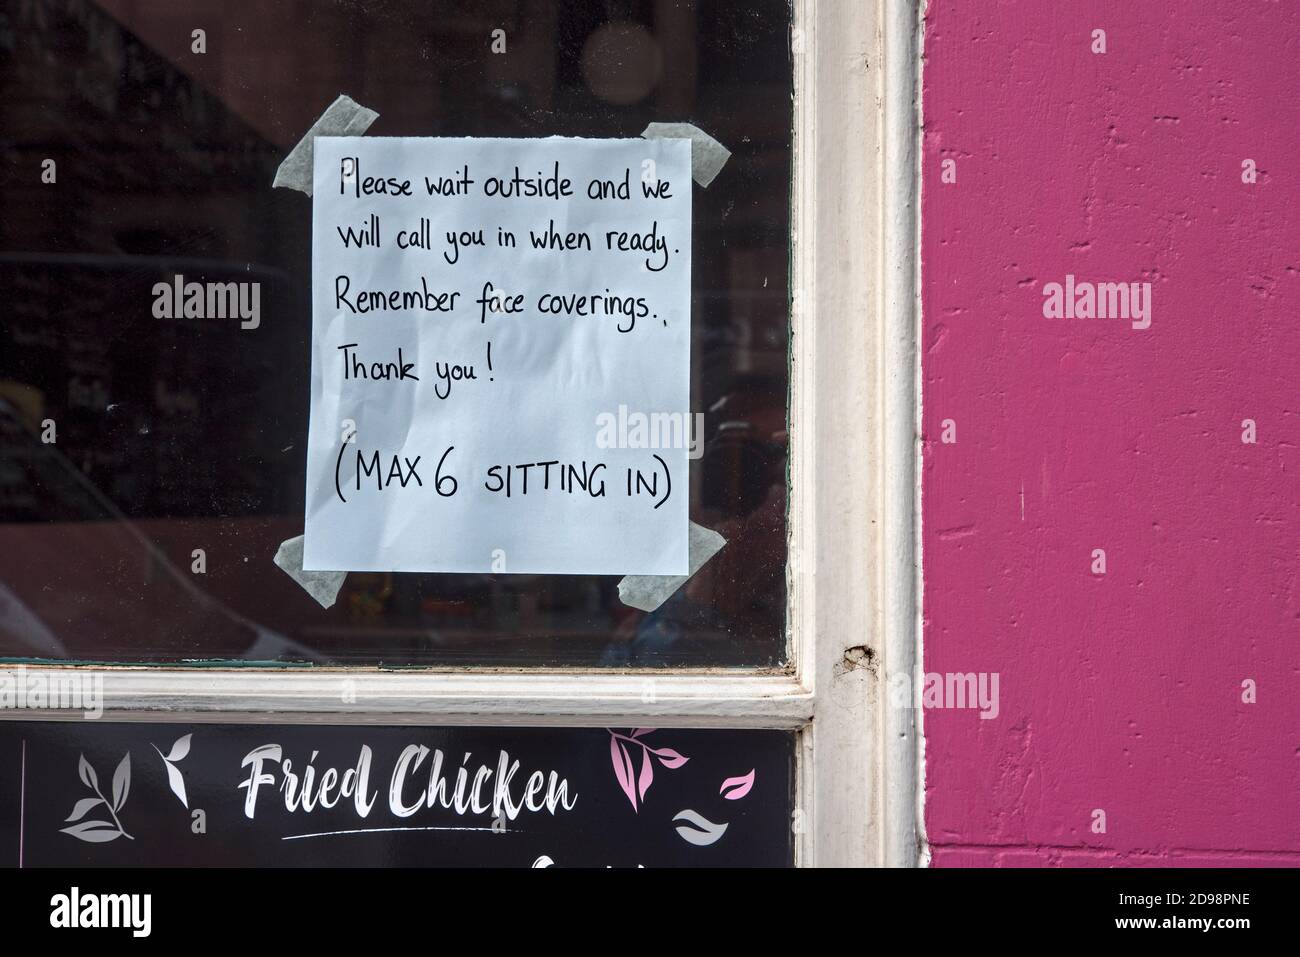 Avviso nella finestra di un caffè di Edimburgo che limita il numero di clienti seduti a 6 durante la pandemia di covid-19. Foto Stock